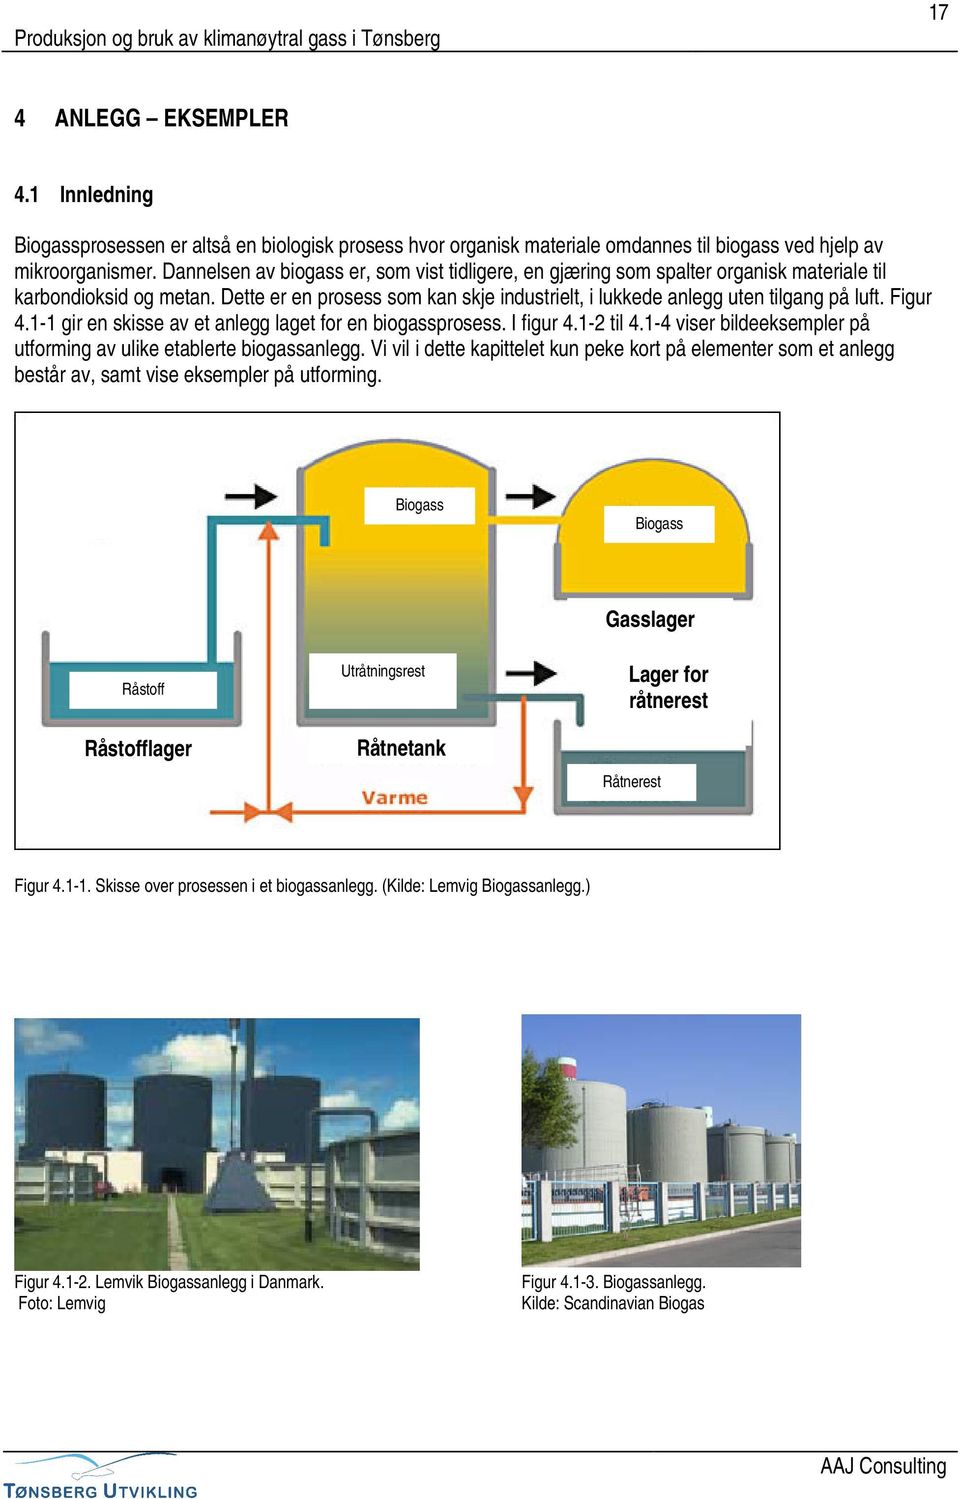 Figur 4.1-1 gir en skisse av et anlegg laget for en biogassprosess. I figur 4.1-2 til 4.1-4 viser bildeeksempler på utforming av ulike etablerte biogassanlegg.